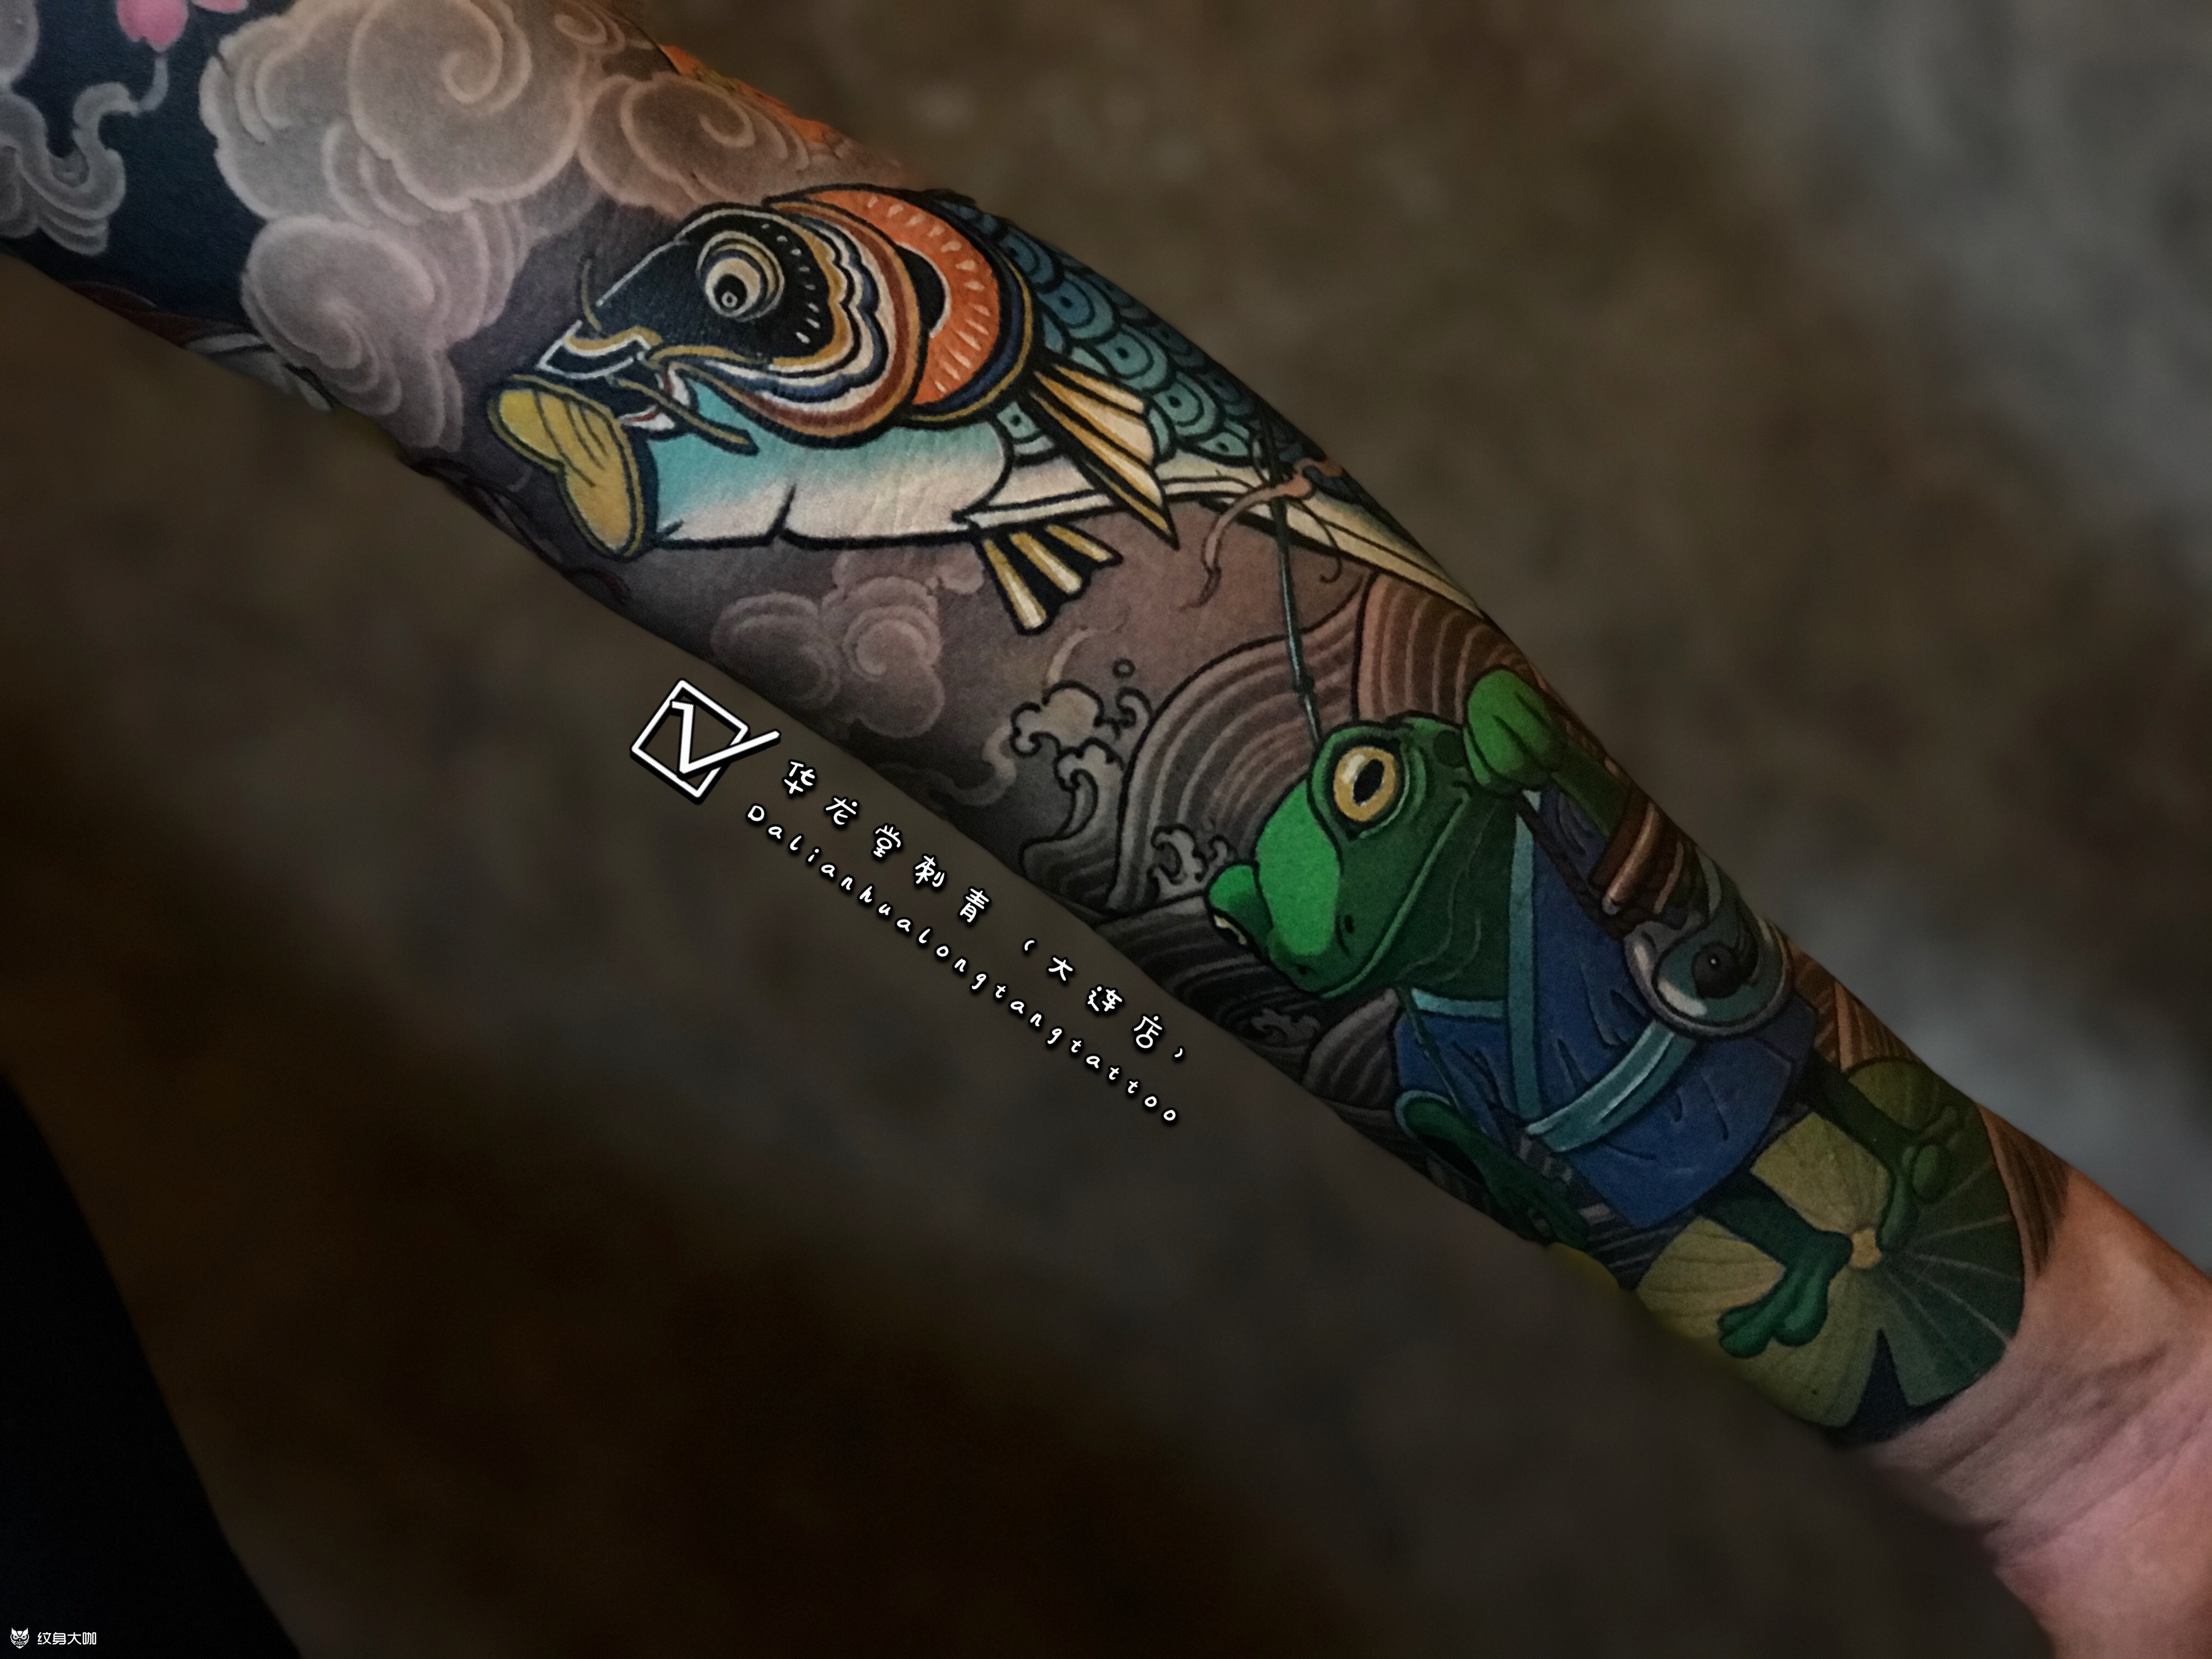 纹身素材——青蛙图案 - 知乎